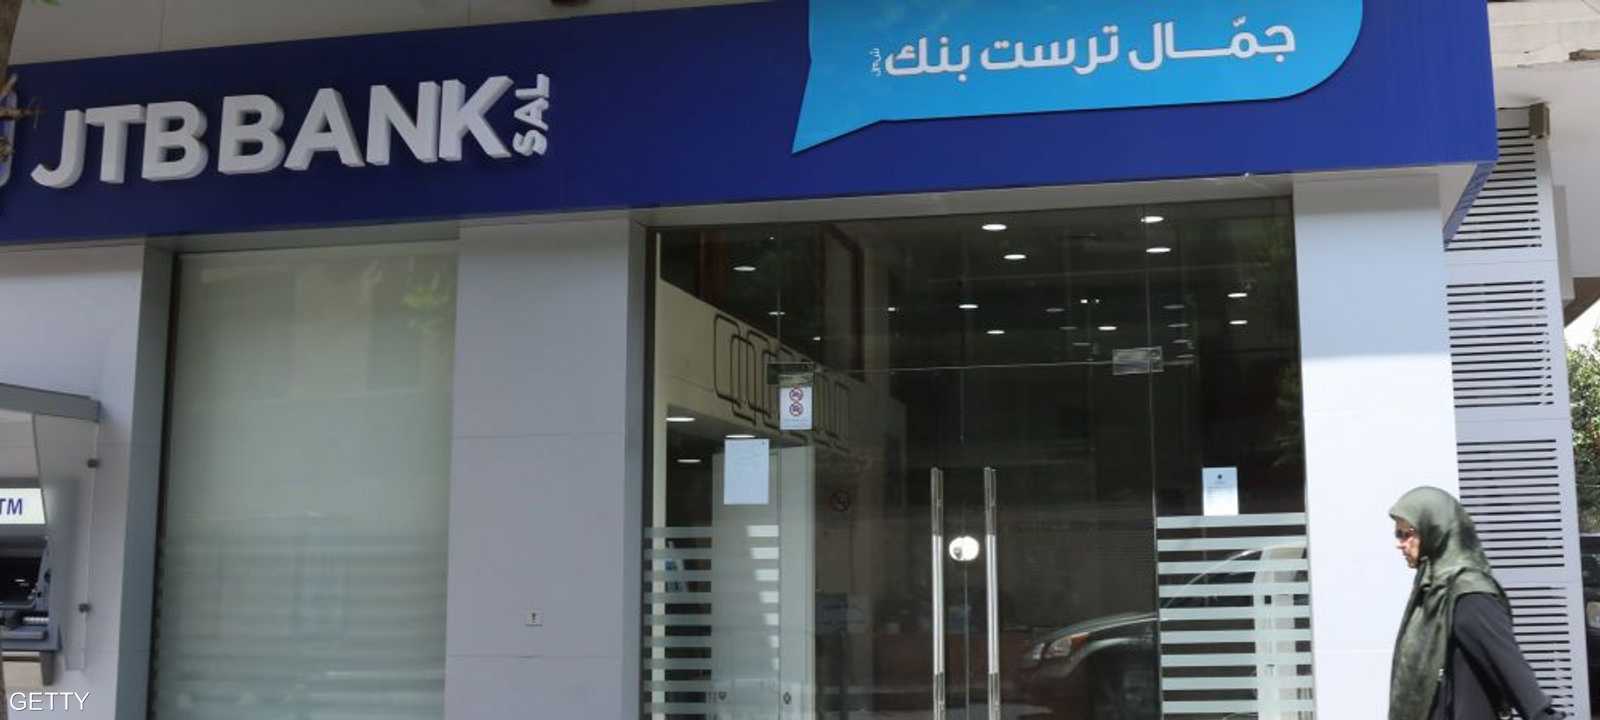 العقوبات الأميركية تجبر "جمال ترست بنك" اللبناني على التصفية